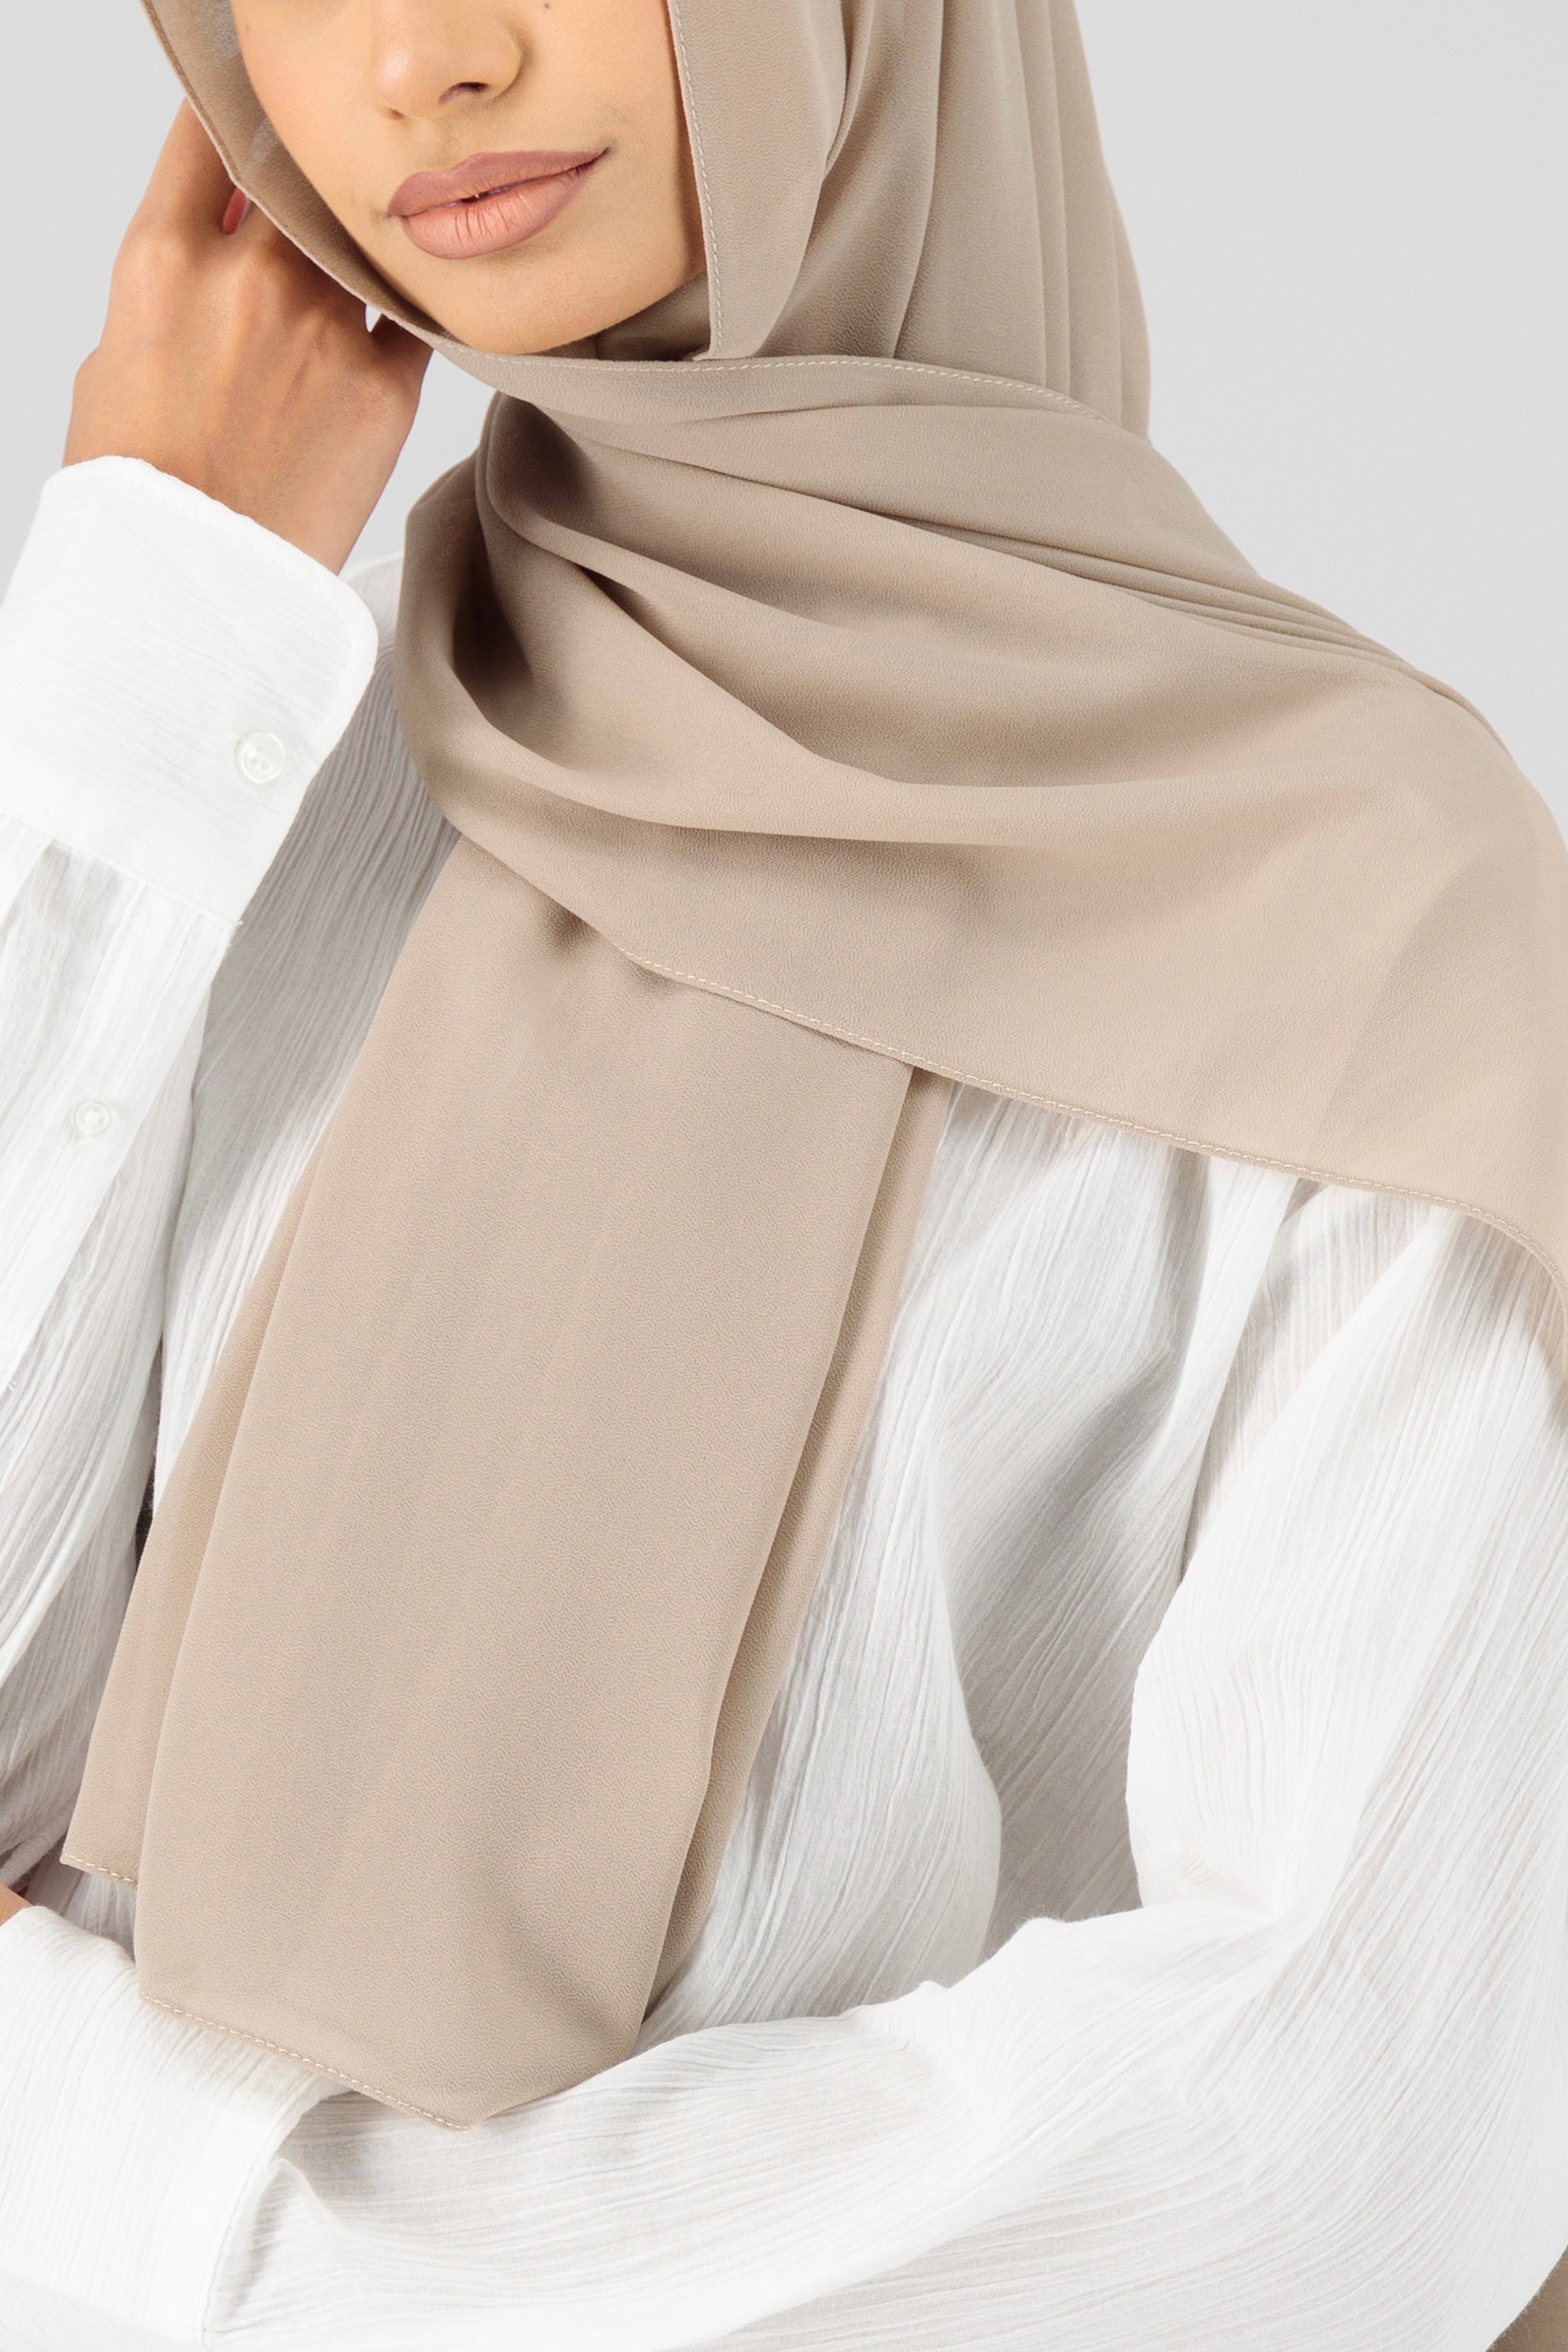 AE - Matching Chiffon Hijab Set - Sand